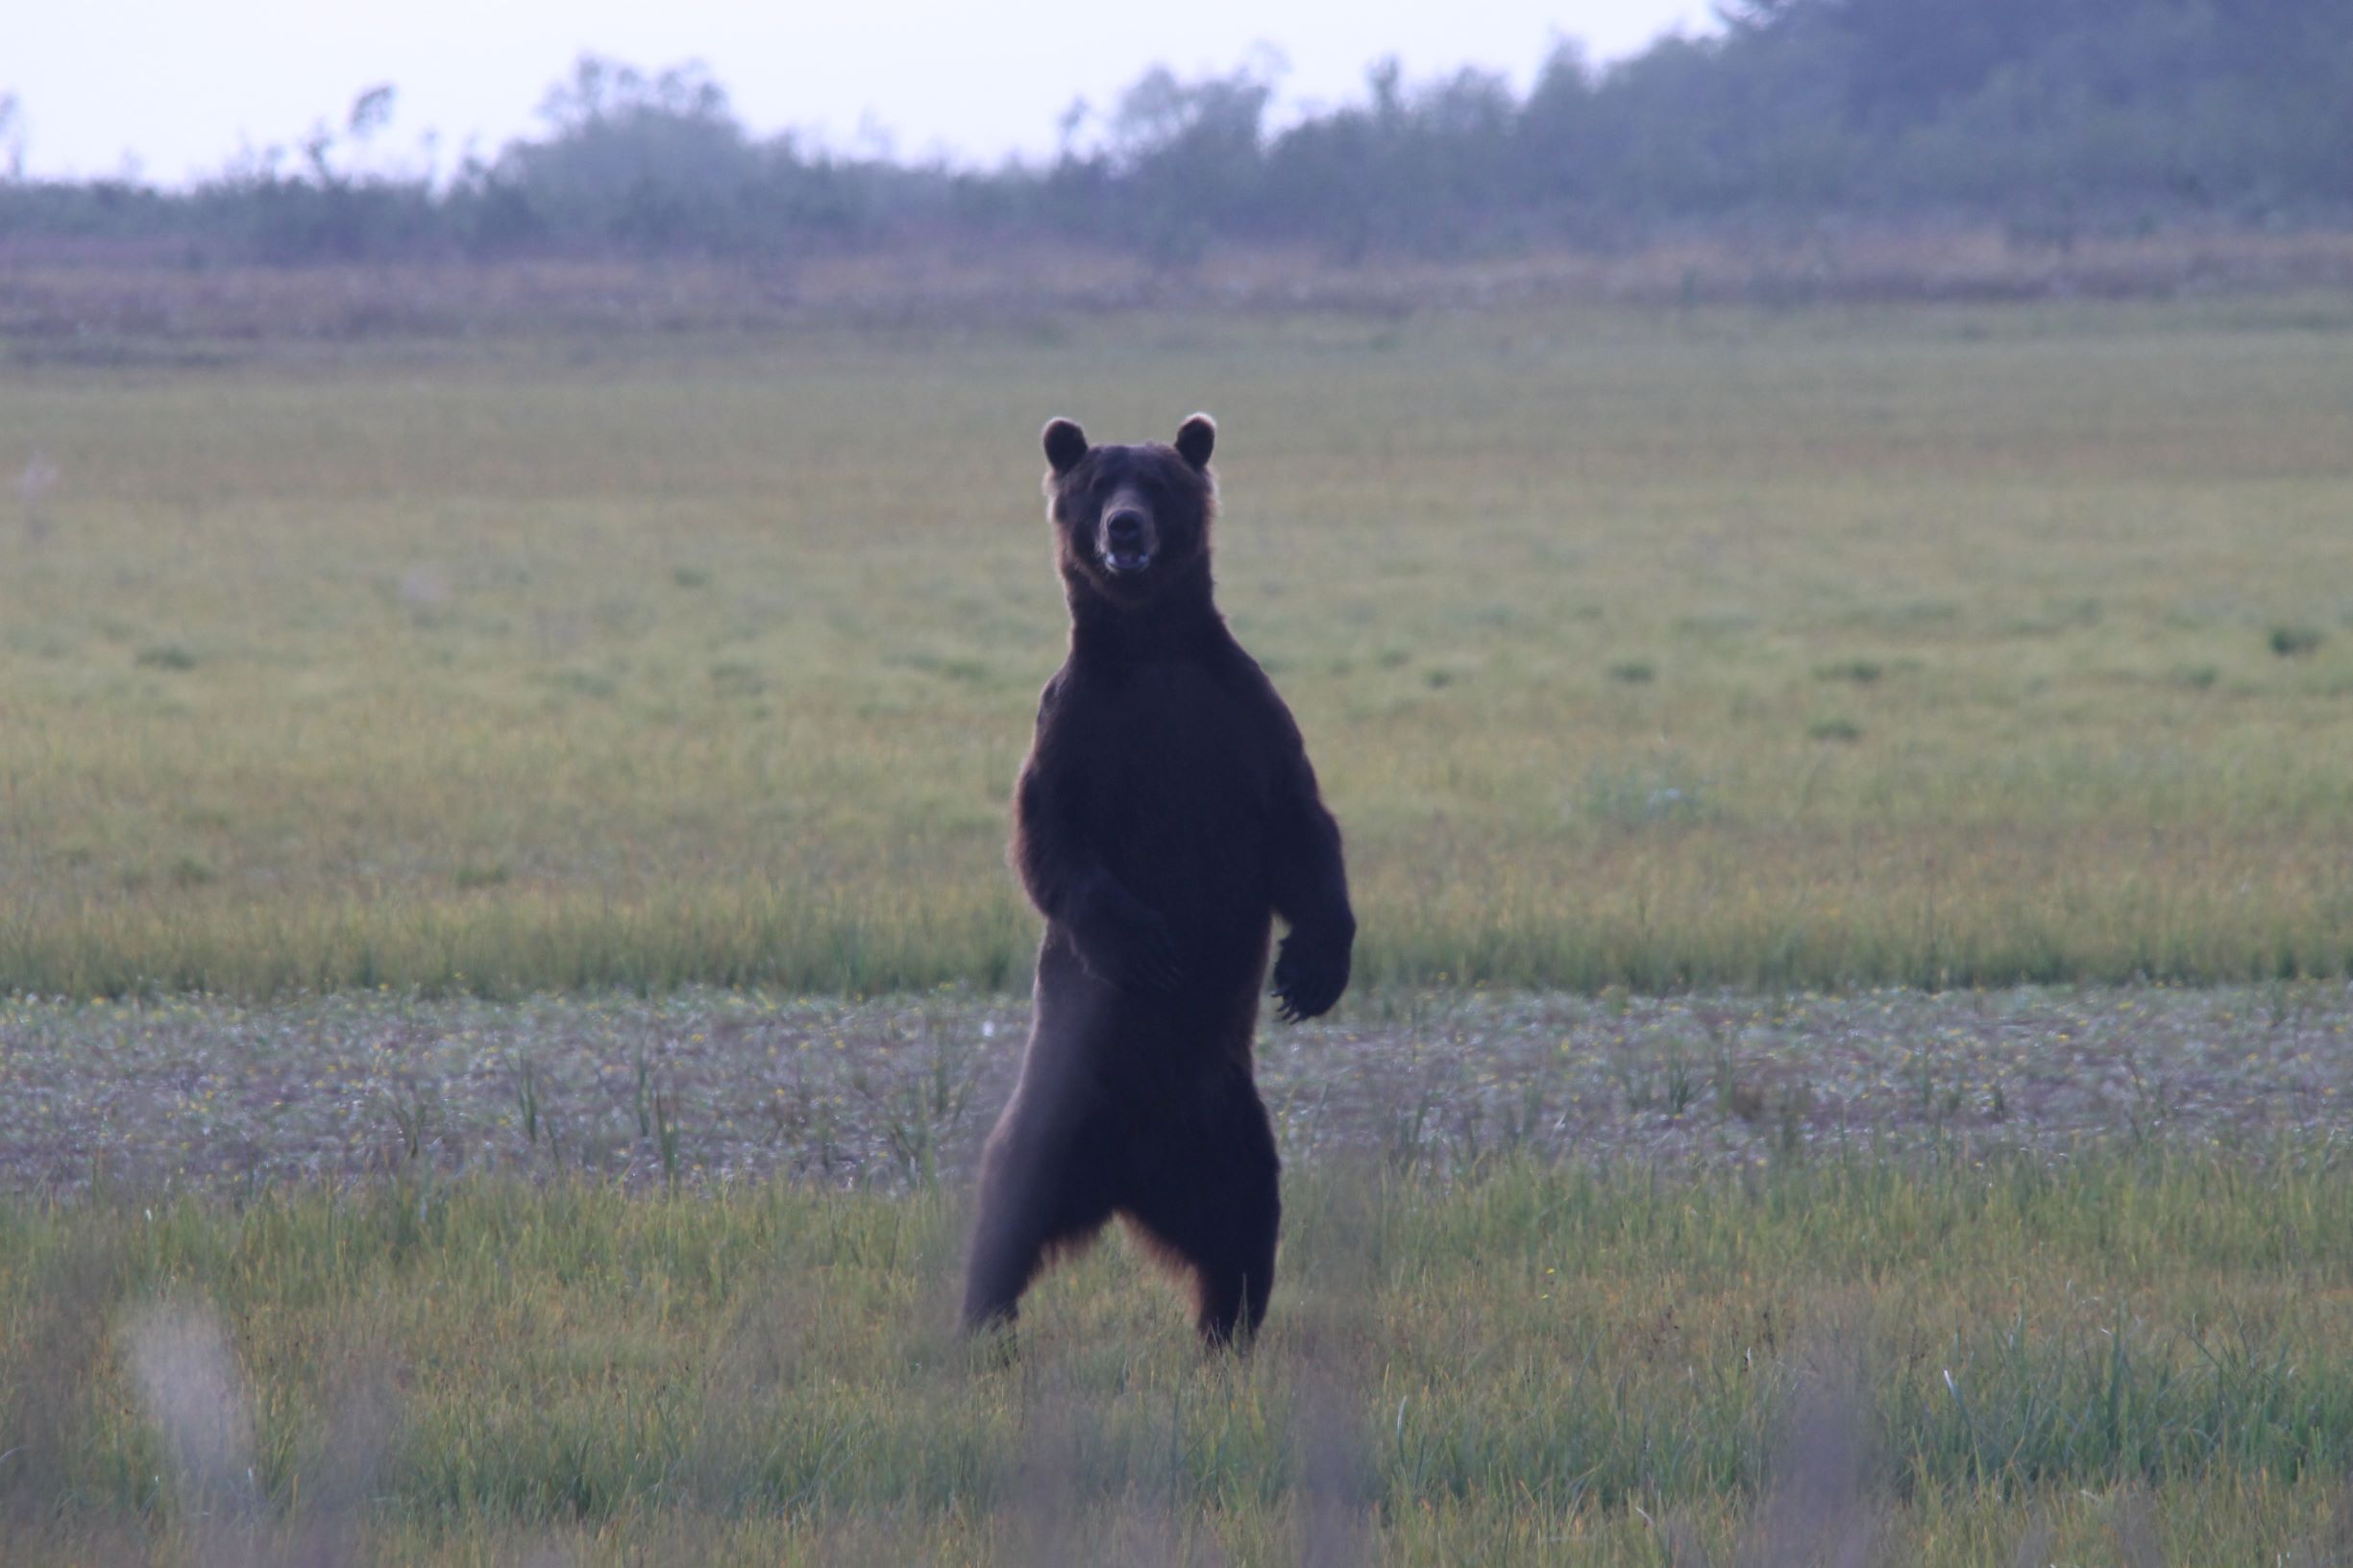 A bear standing in a field.